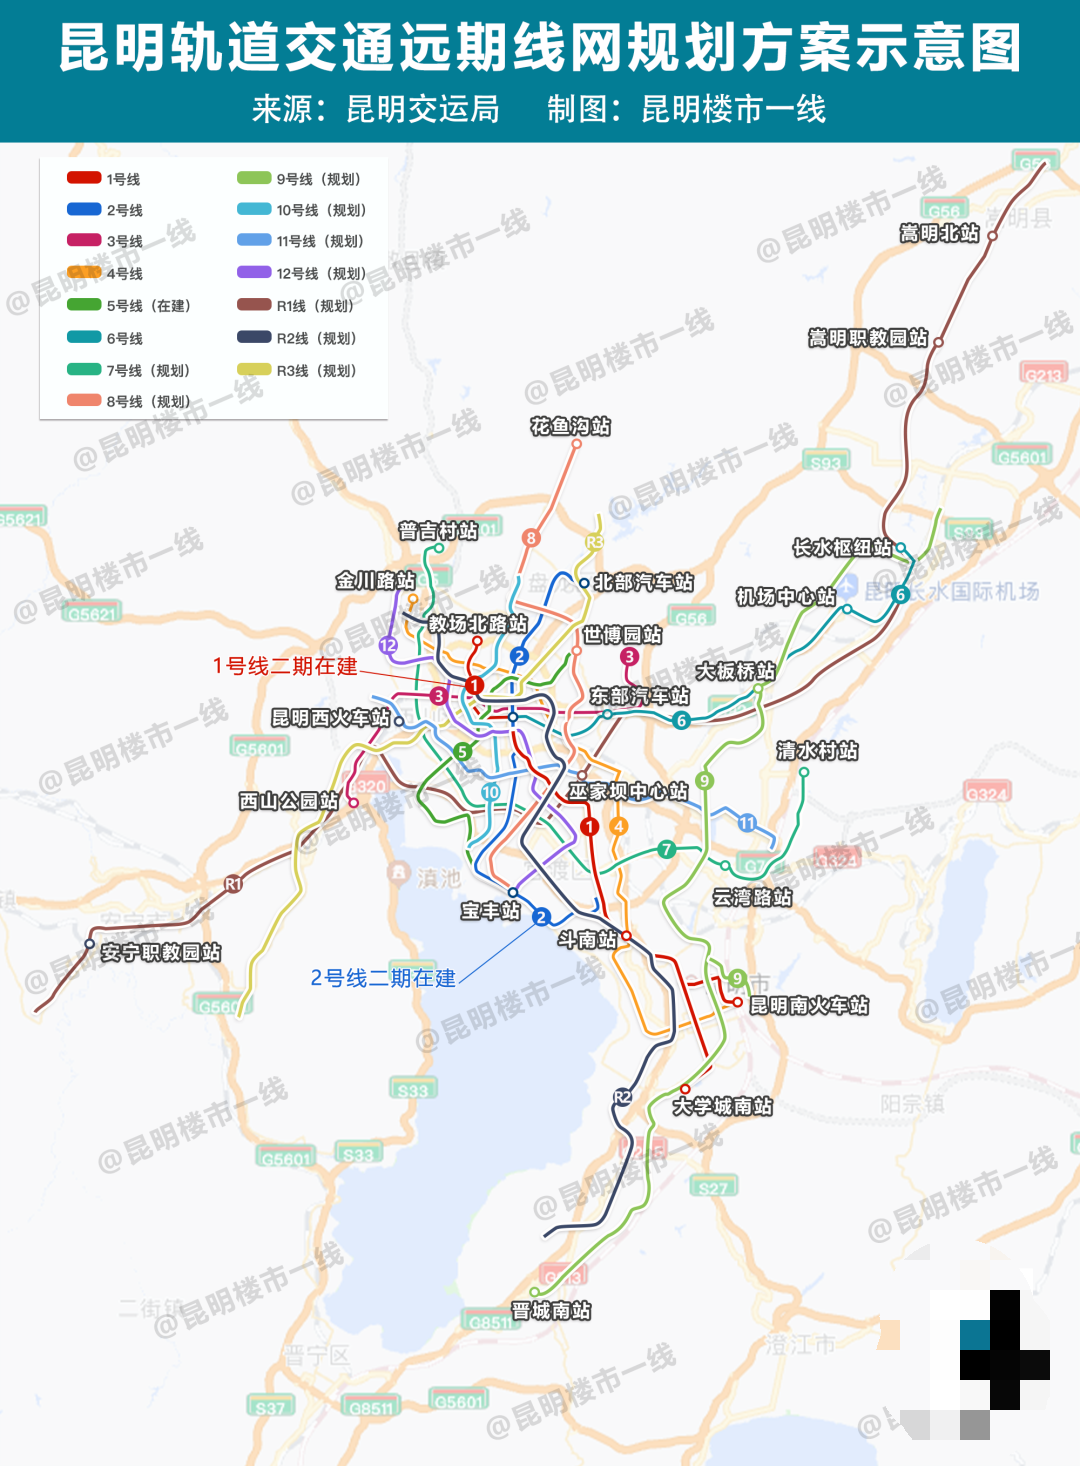 昆明地铁 - 地铁线路图